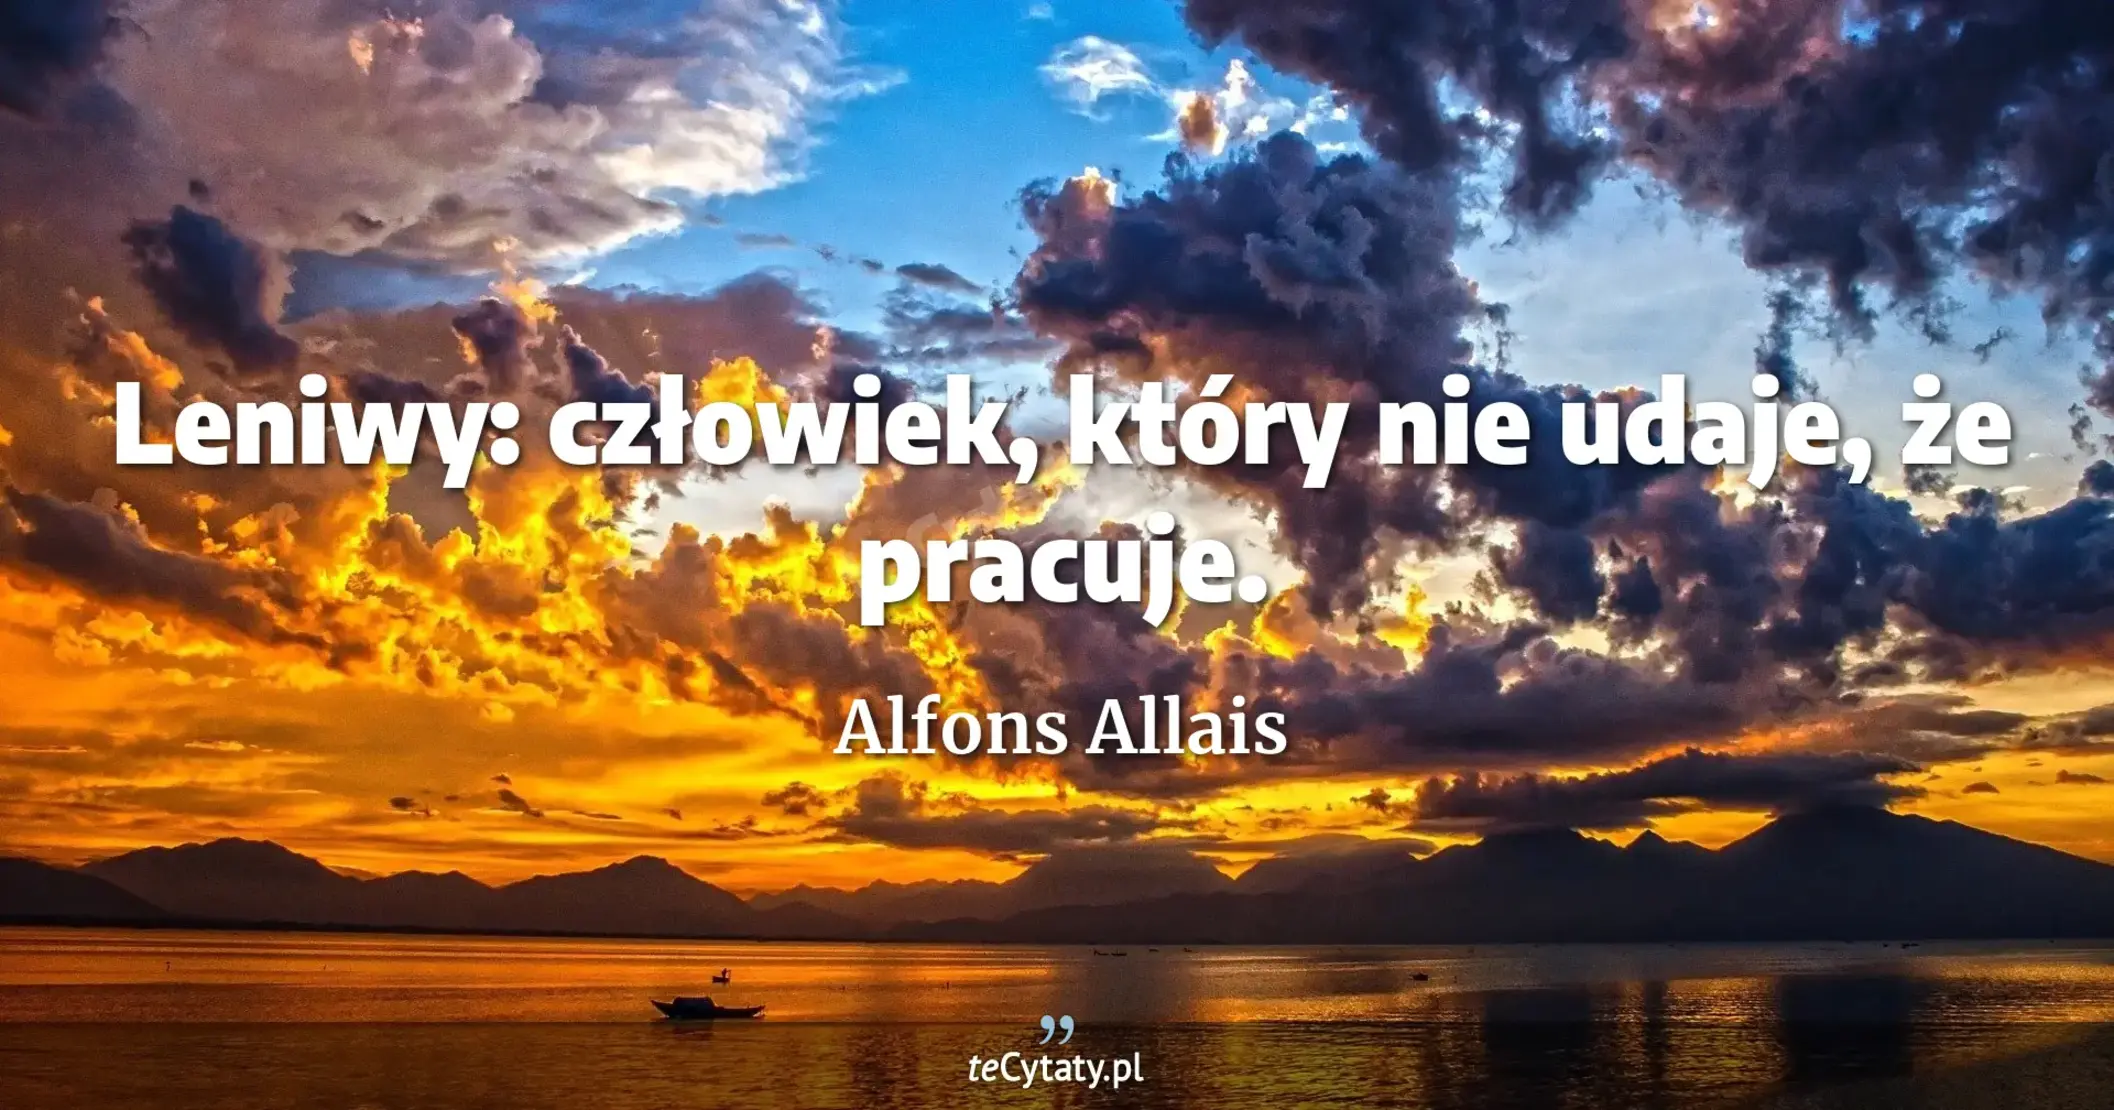 Leniwy: człowiek, który nie udaje, że pracuje. - Alfons Allais